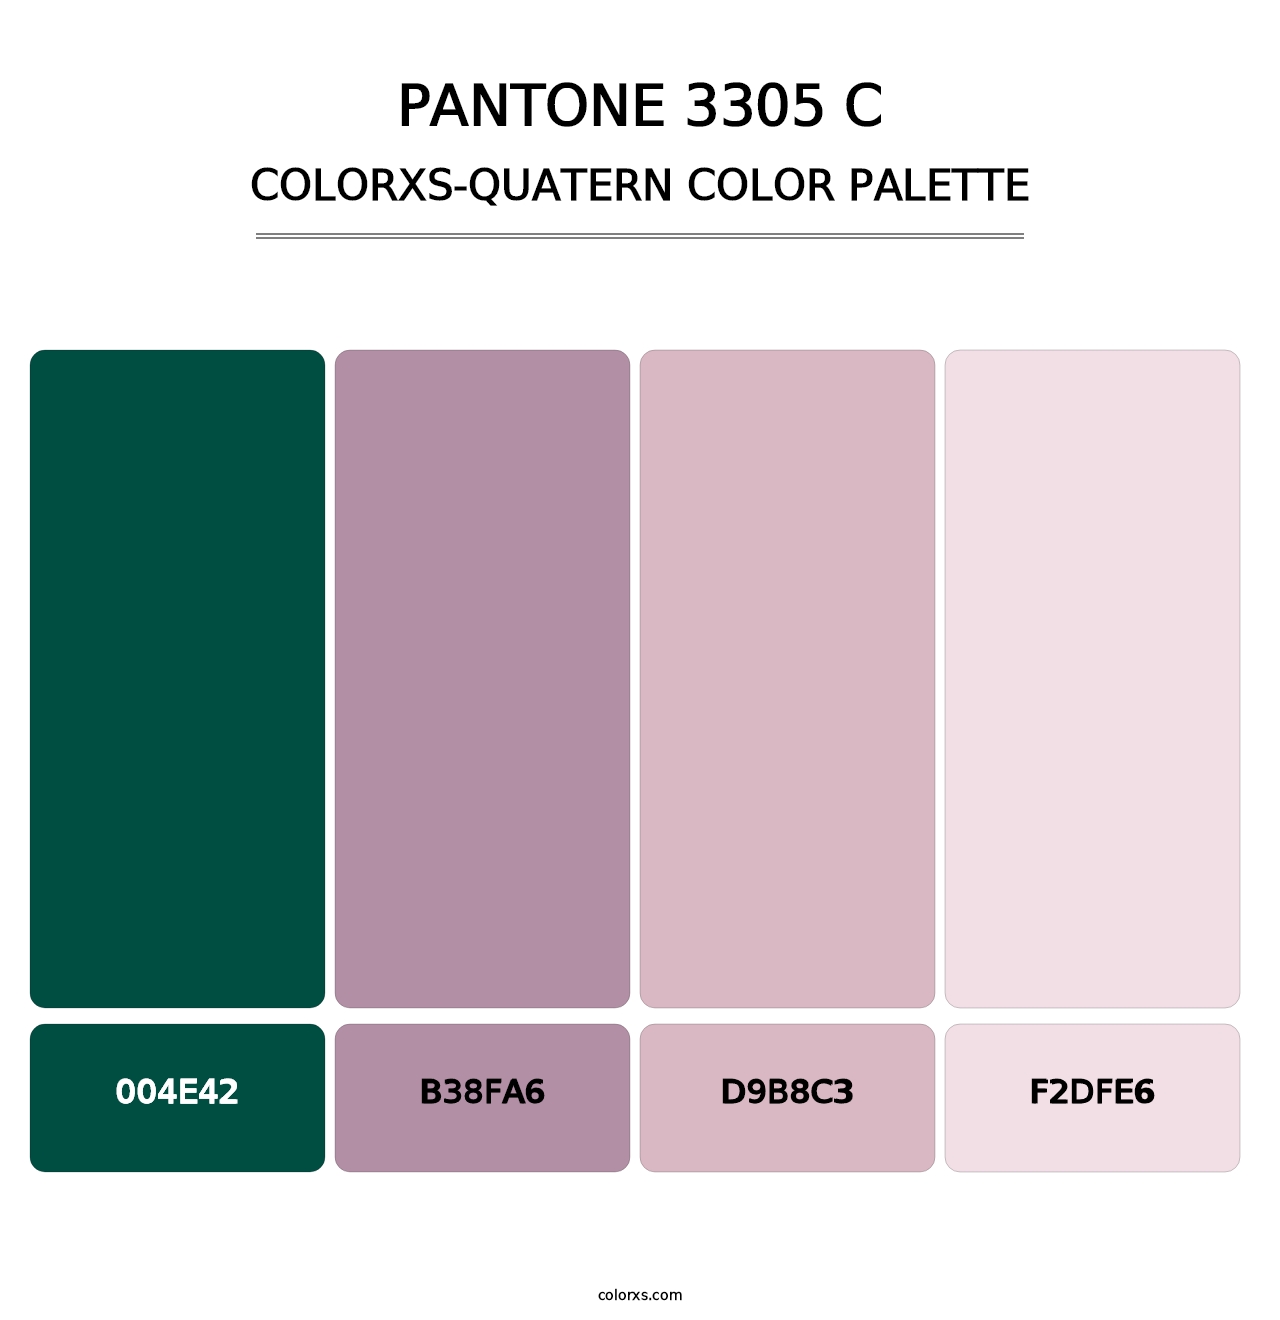 PANTONE 3305 C - Colorxs Quatern Palette